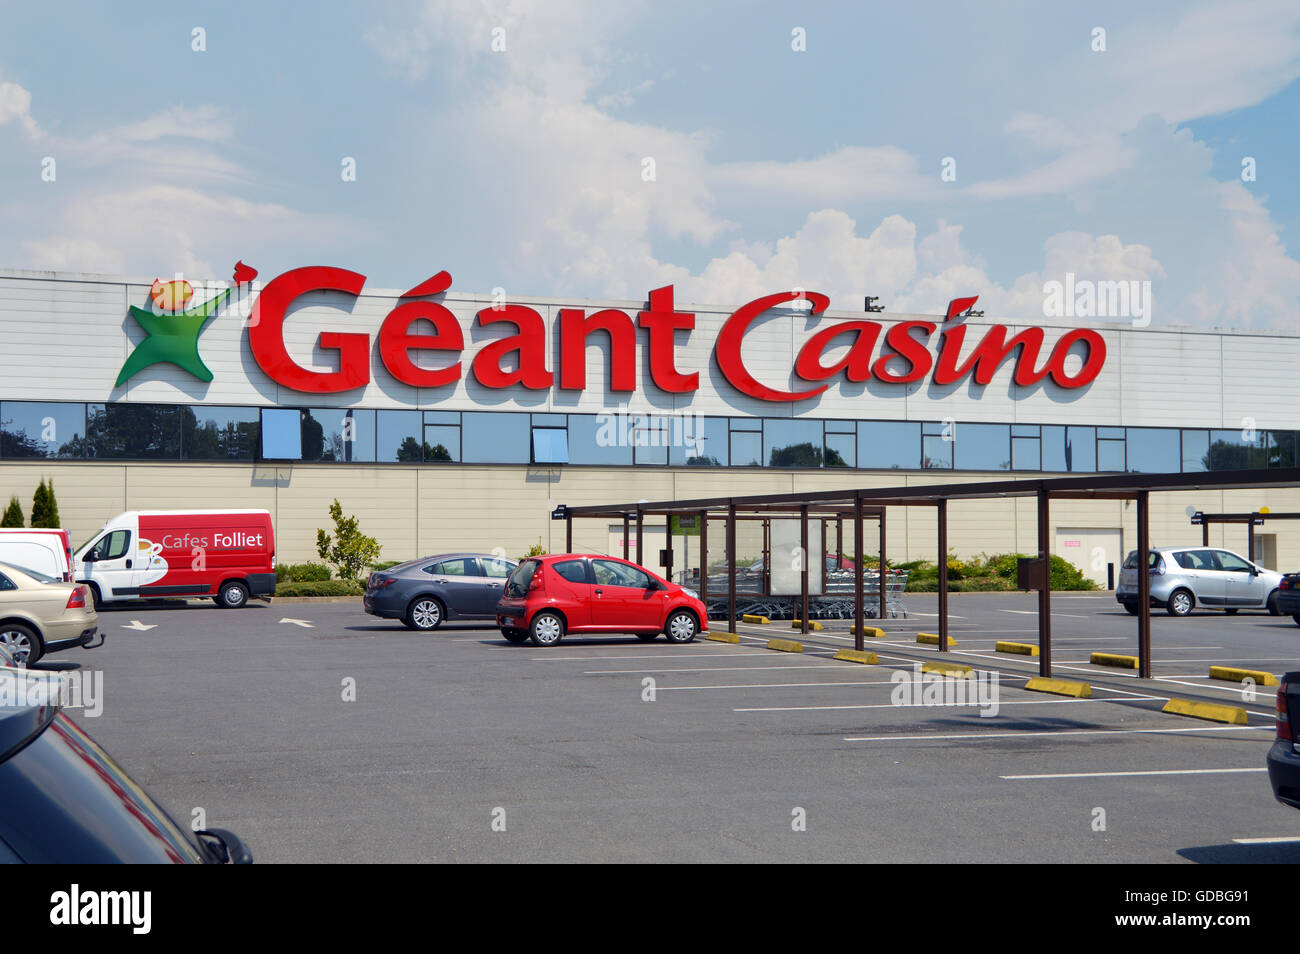 Facade of a Géant Casino hypermarket Stock Photo